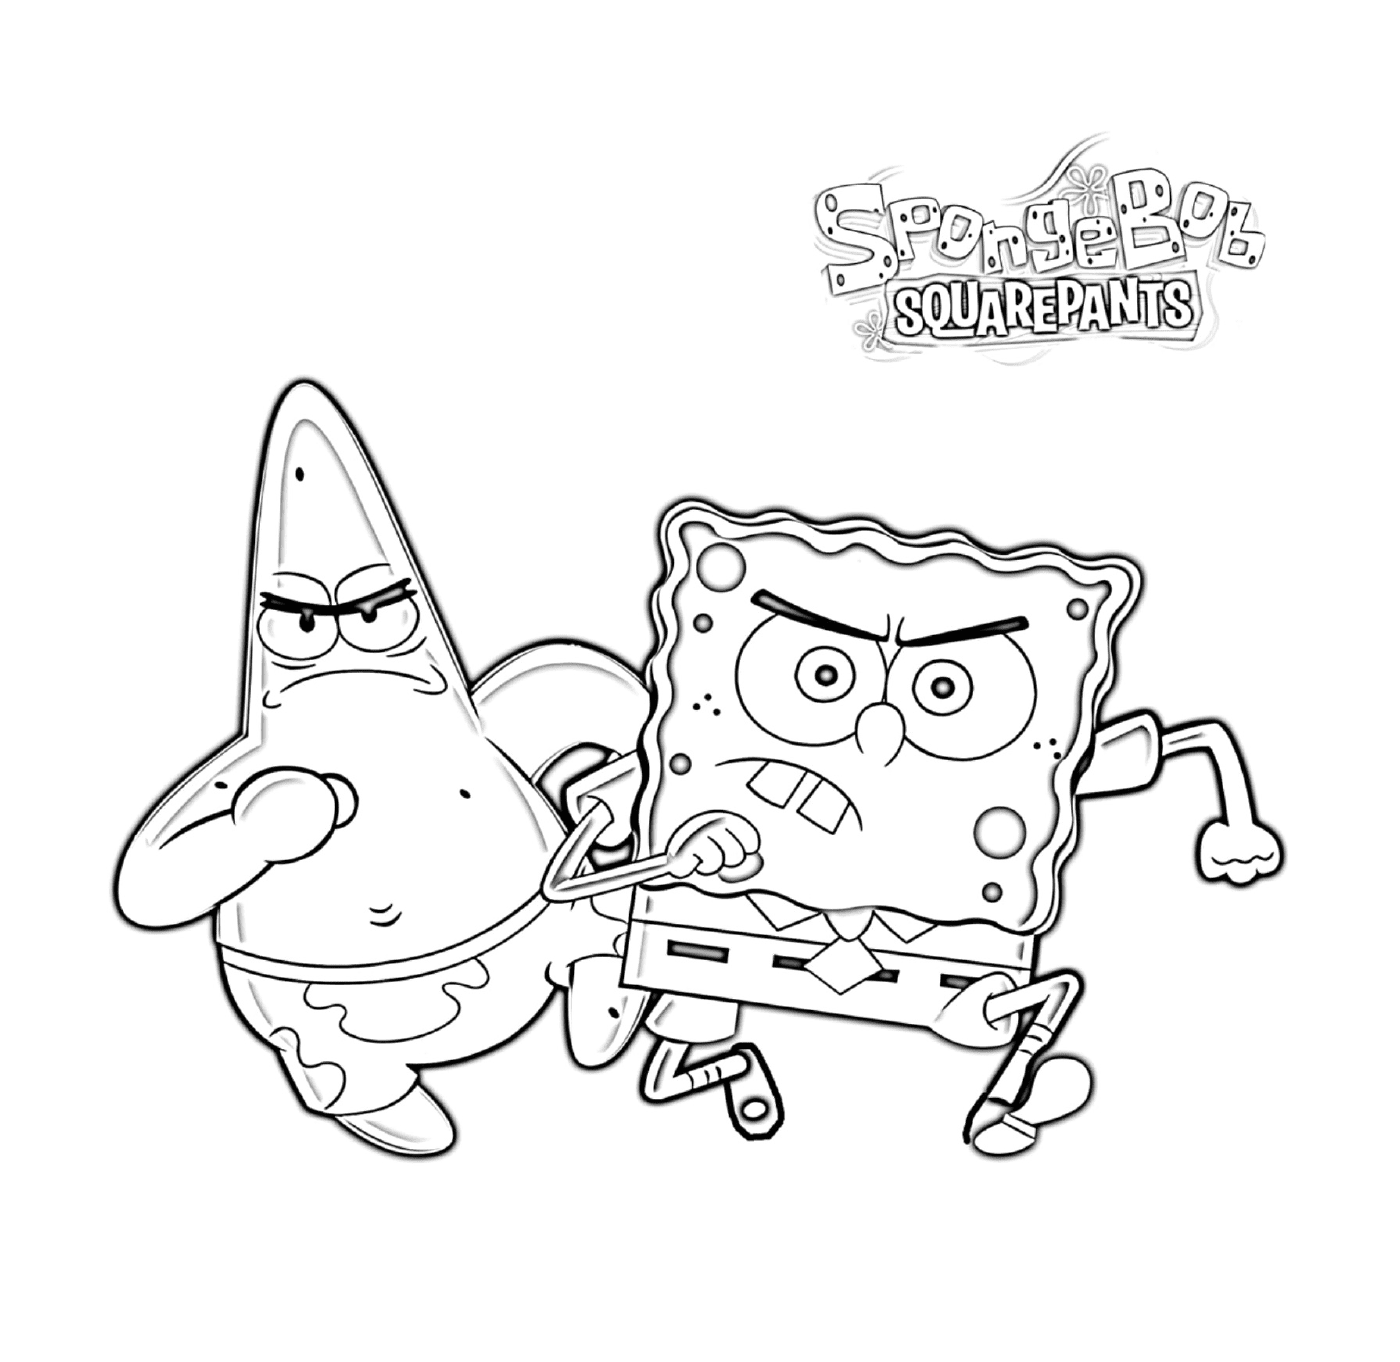  Spongebob and Patrick furious 